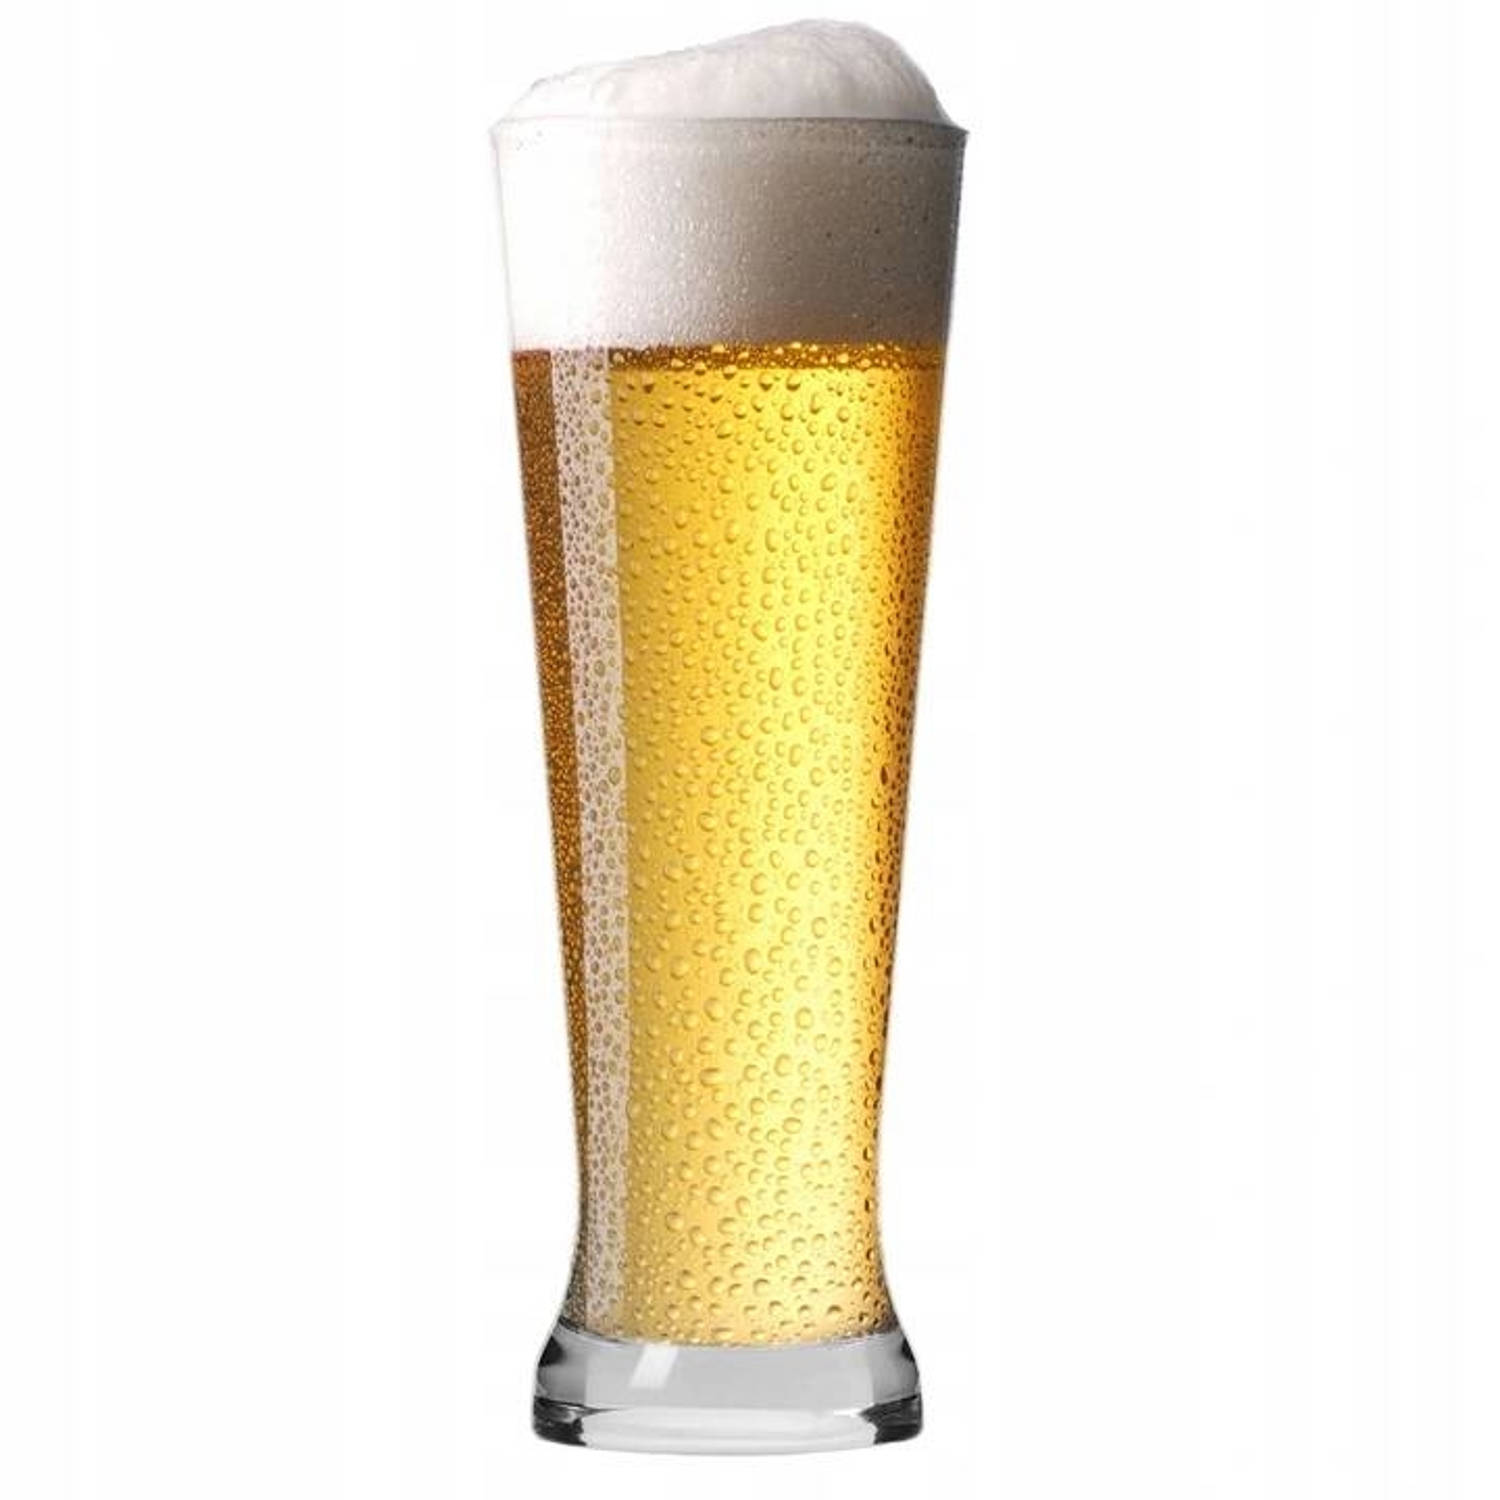 Krosno Bierglazen - Speciaal bier - Weizen - 500 ml - 4 stuks